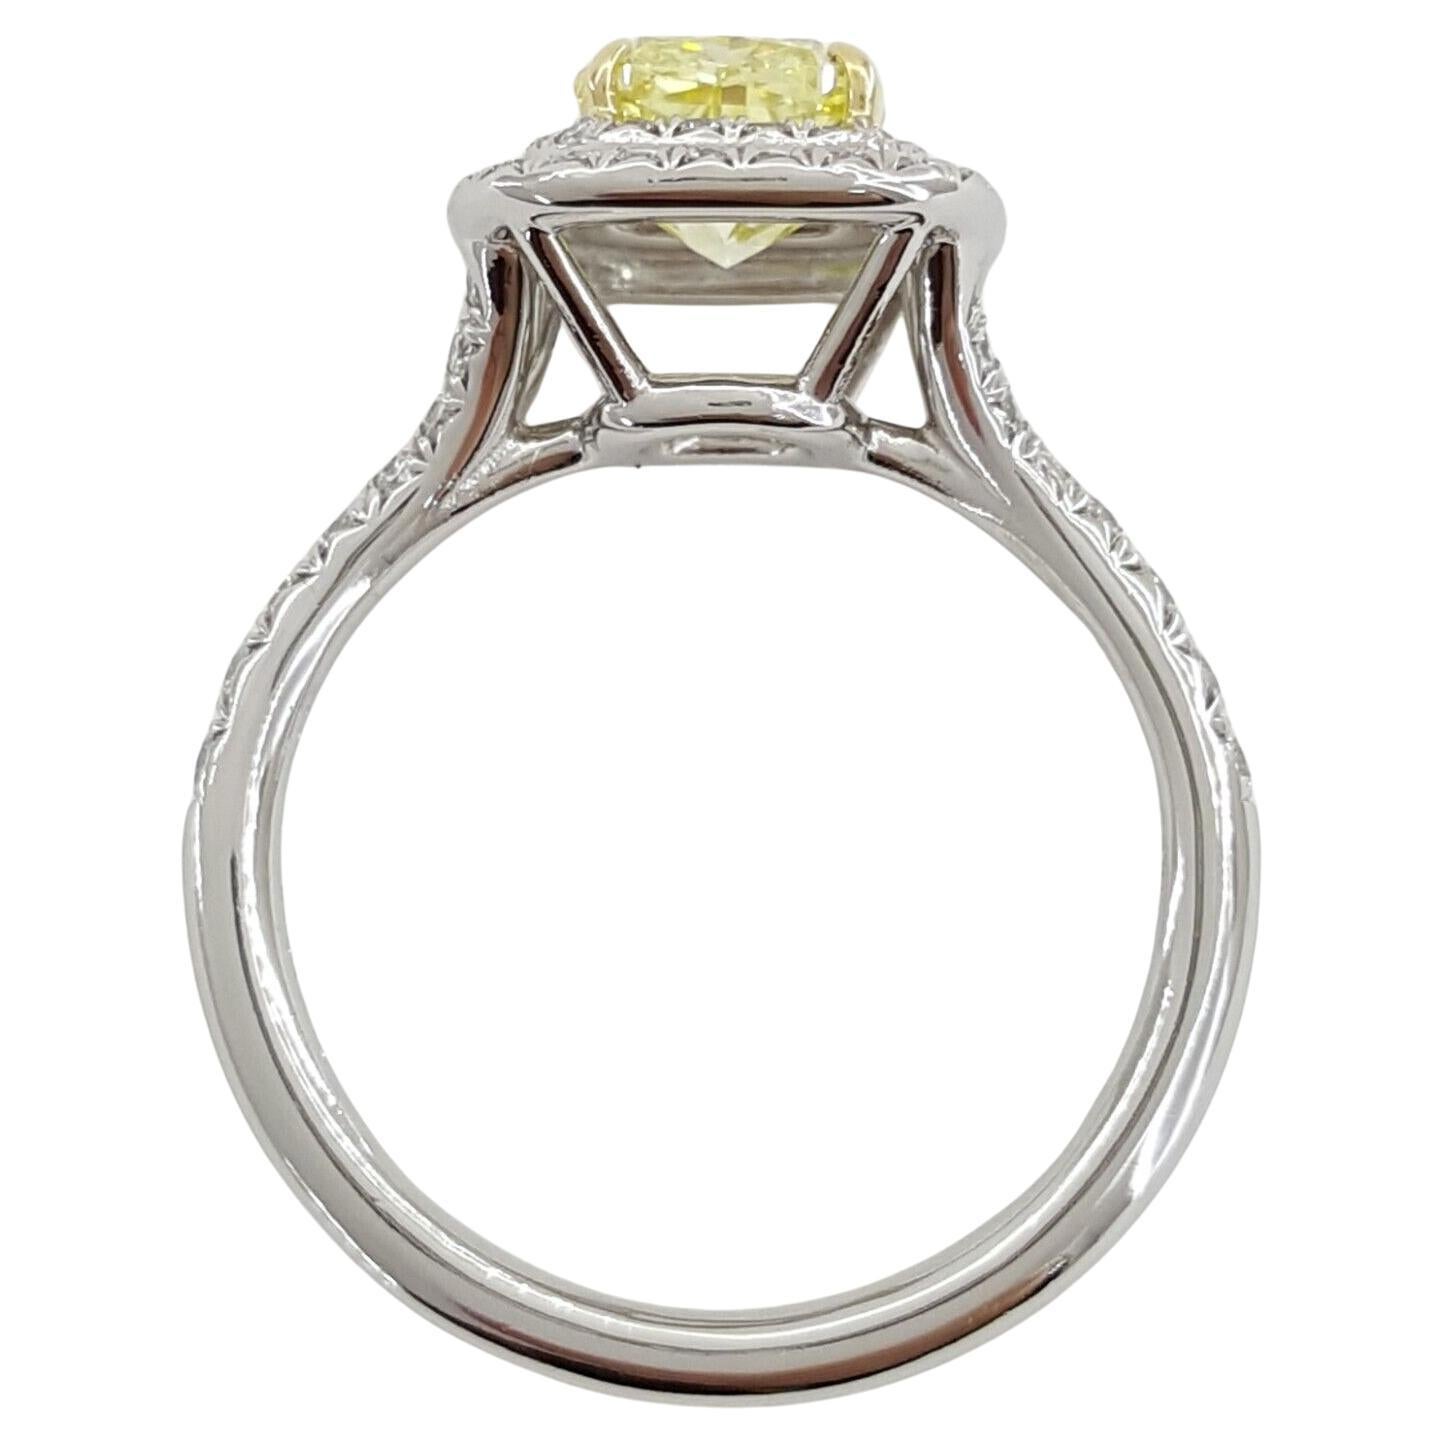 Découvrez le summum de l'élégance avec la collection Tiffany & Co. Bague de fiançailles Soleste® sertie d'un superbe diamant taille brillant coussin de 1,78 ct de couleur jaune intense fantaisie. Serti dans un luxueux halo de platine et d'or jaune